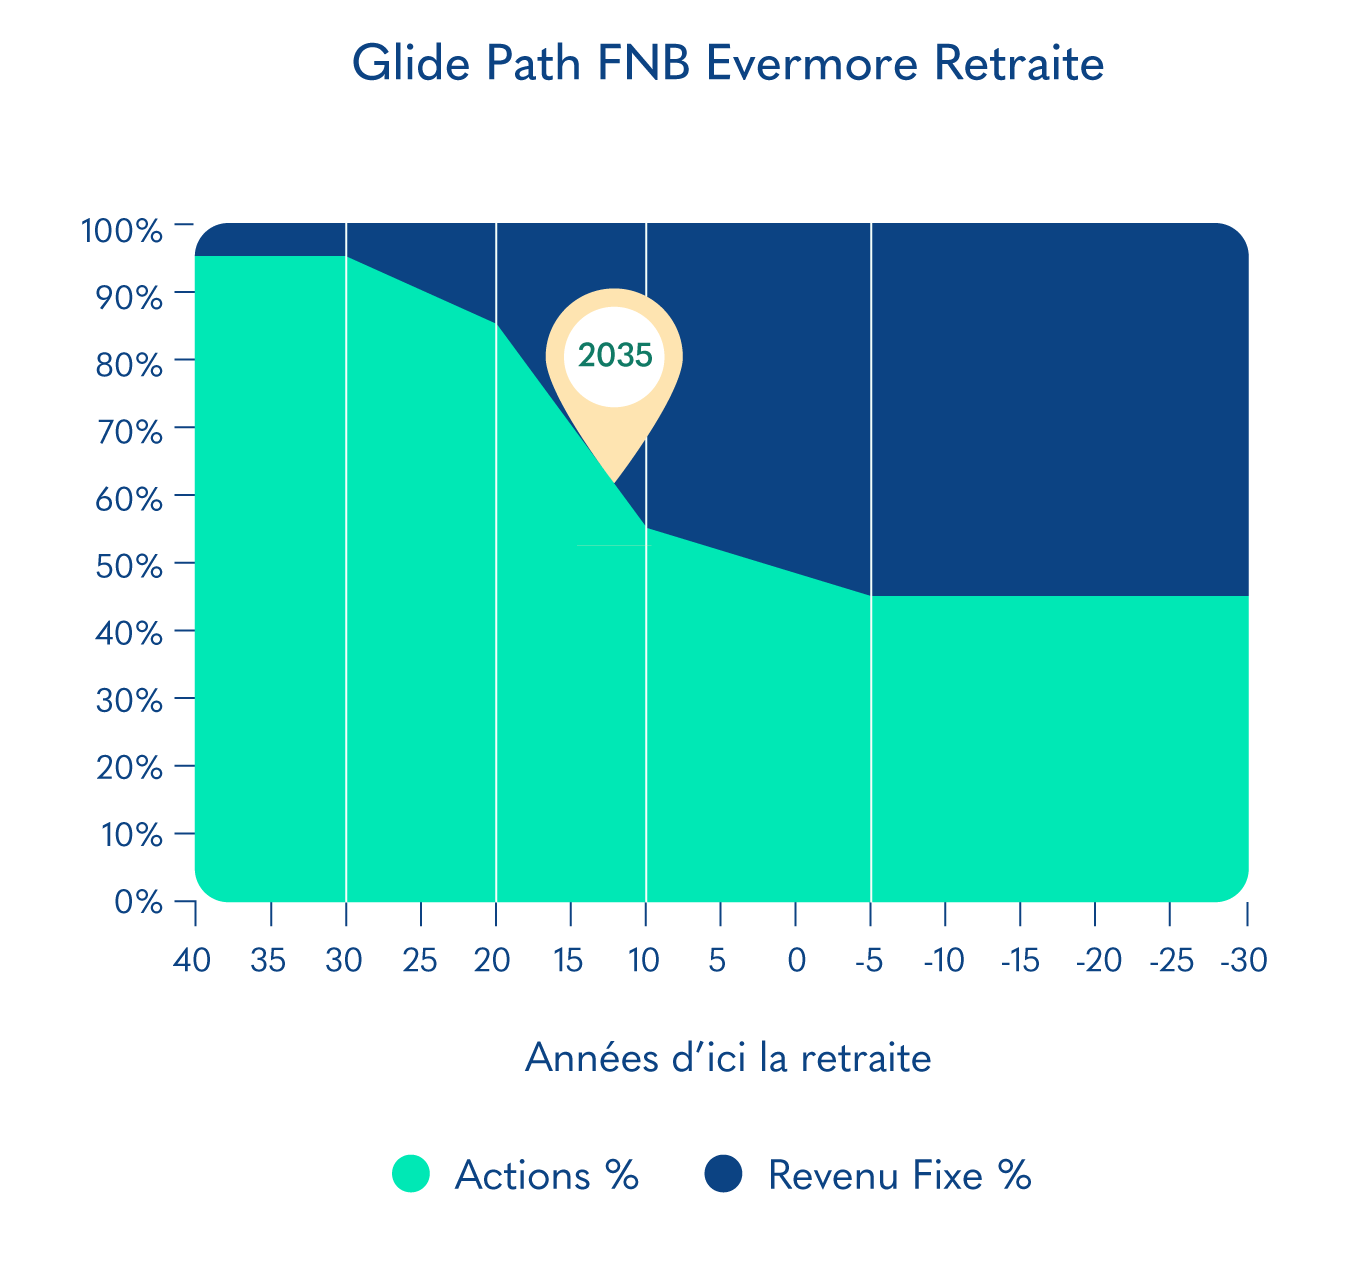 Glide Path FNB Evermore Retraite 2035